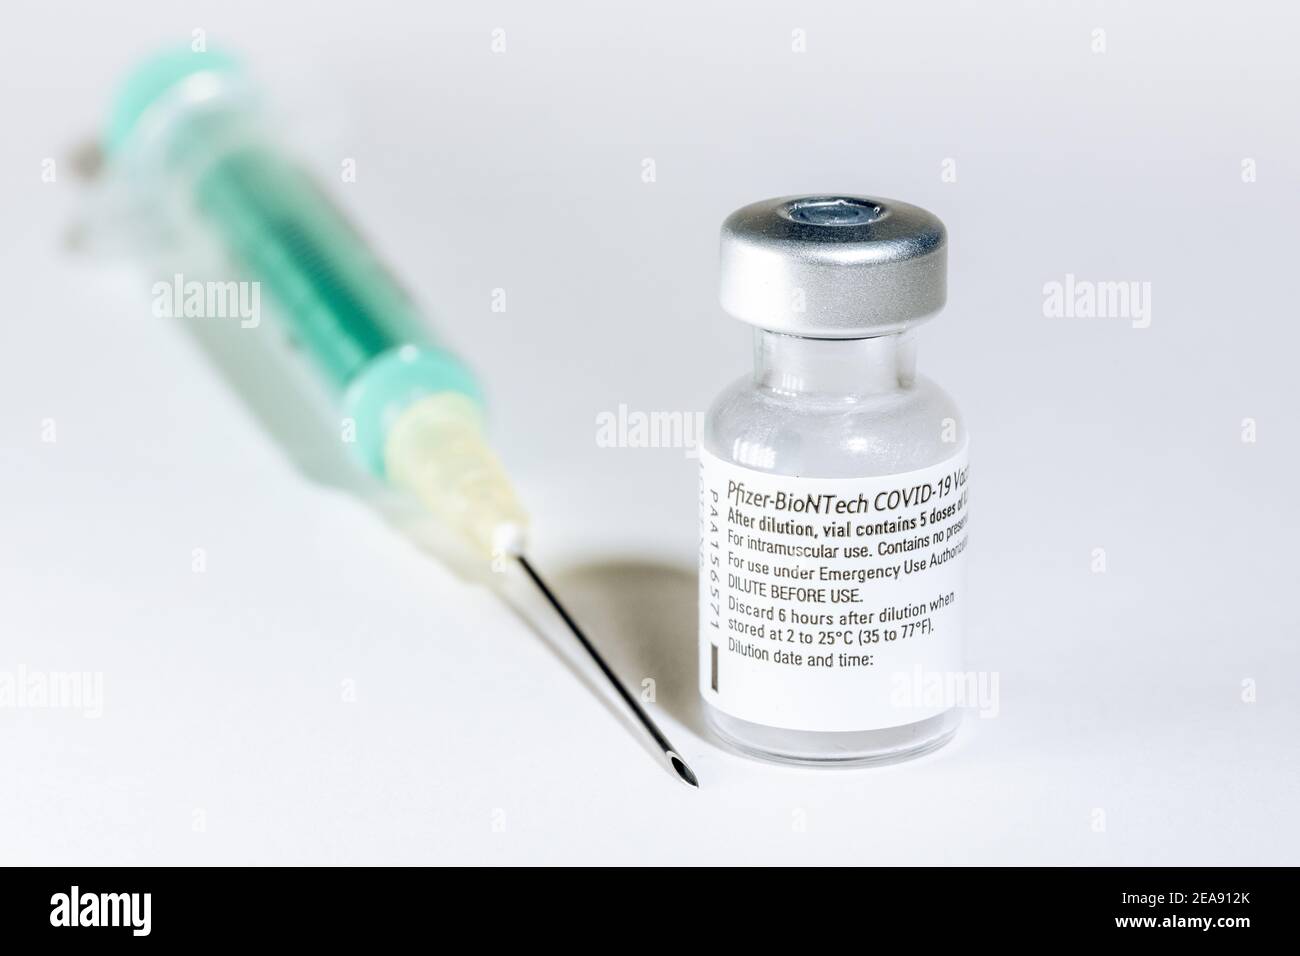 Injektionsflasche des Corona Impfstoffs von Pizer-Biontech - Symbolbild Banque D'Images